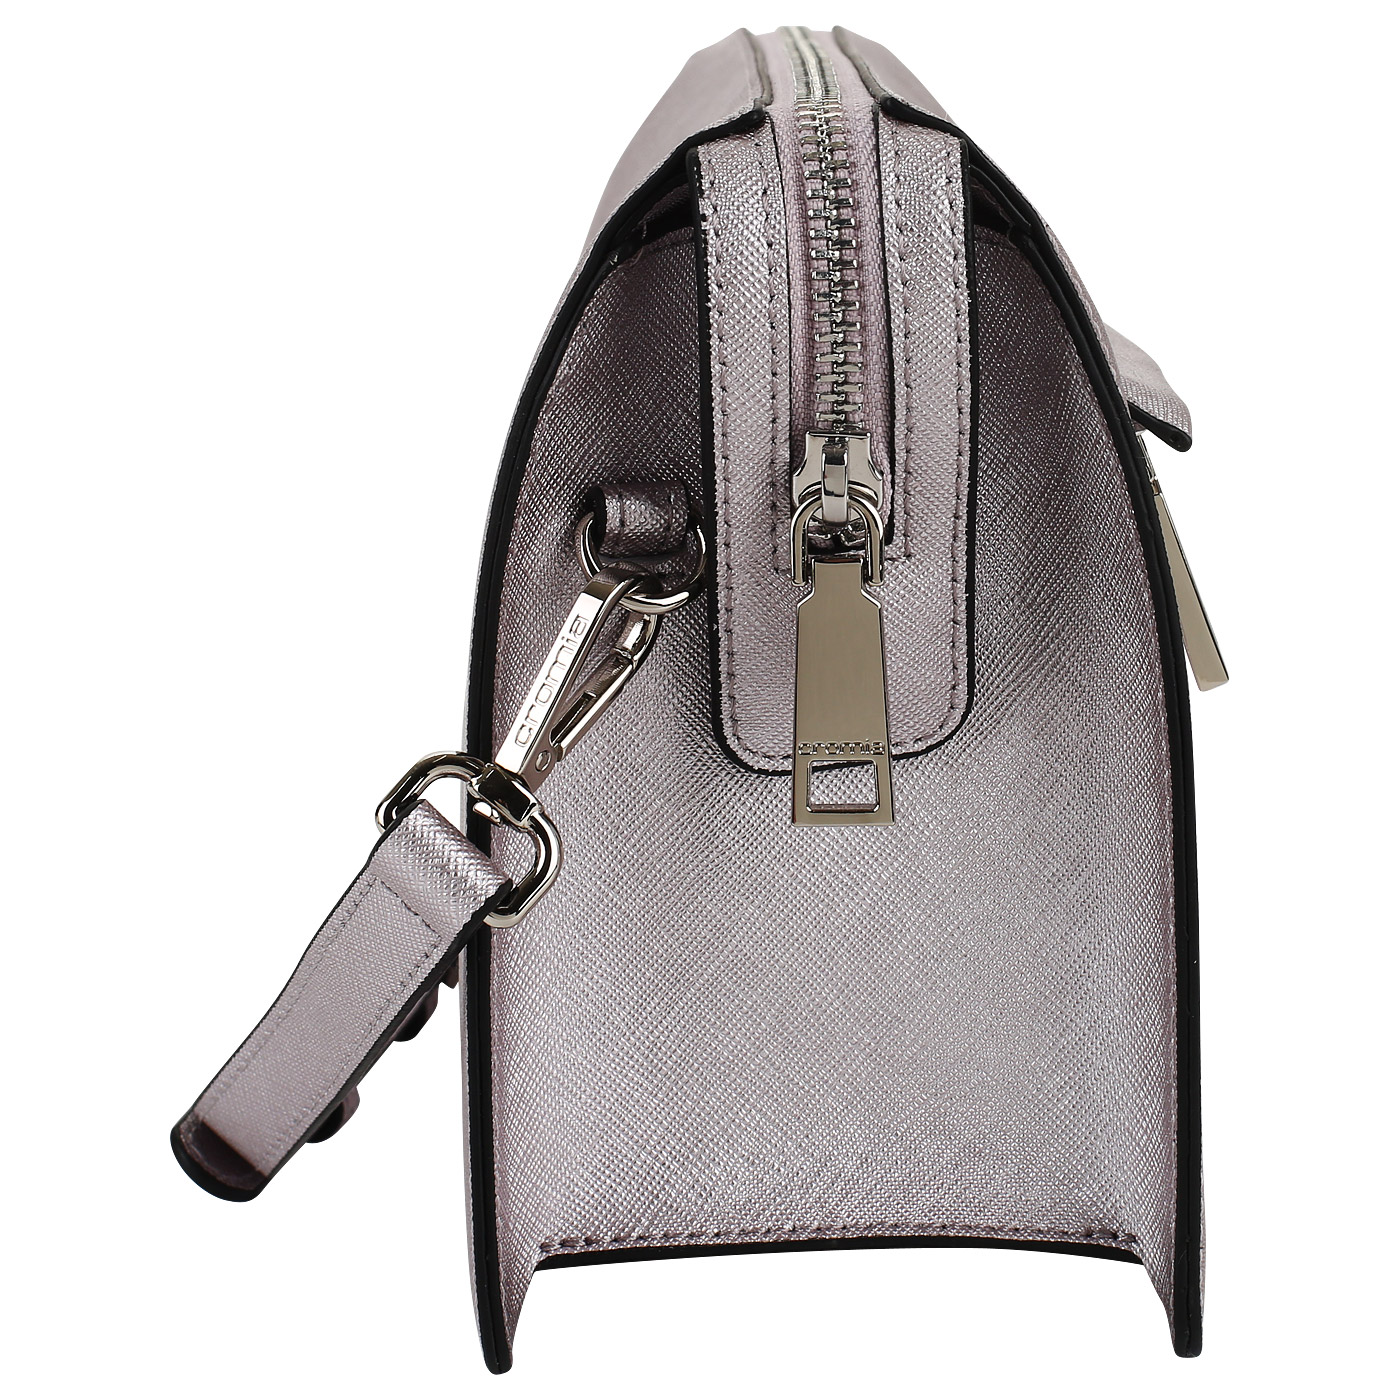 Сафьяновая сумочка со съемным ремешком Cromia Perla